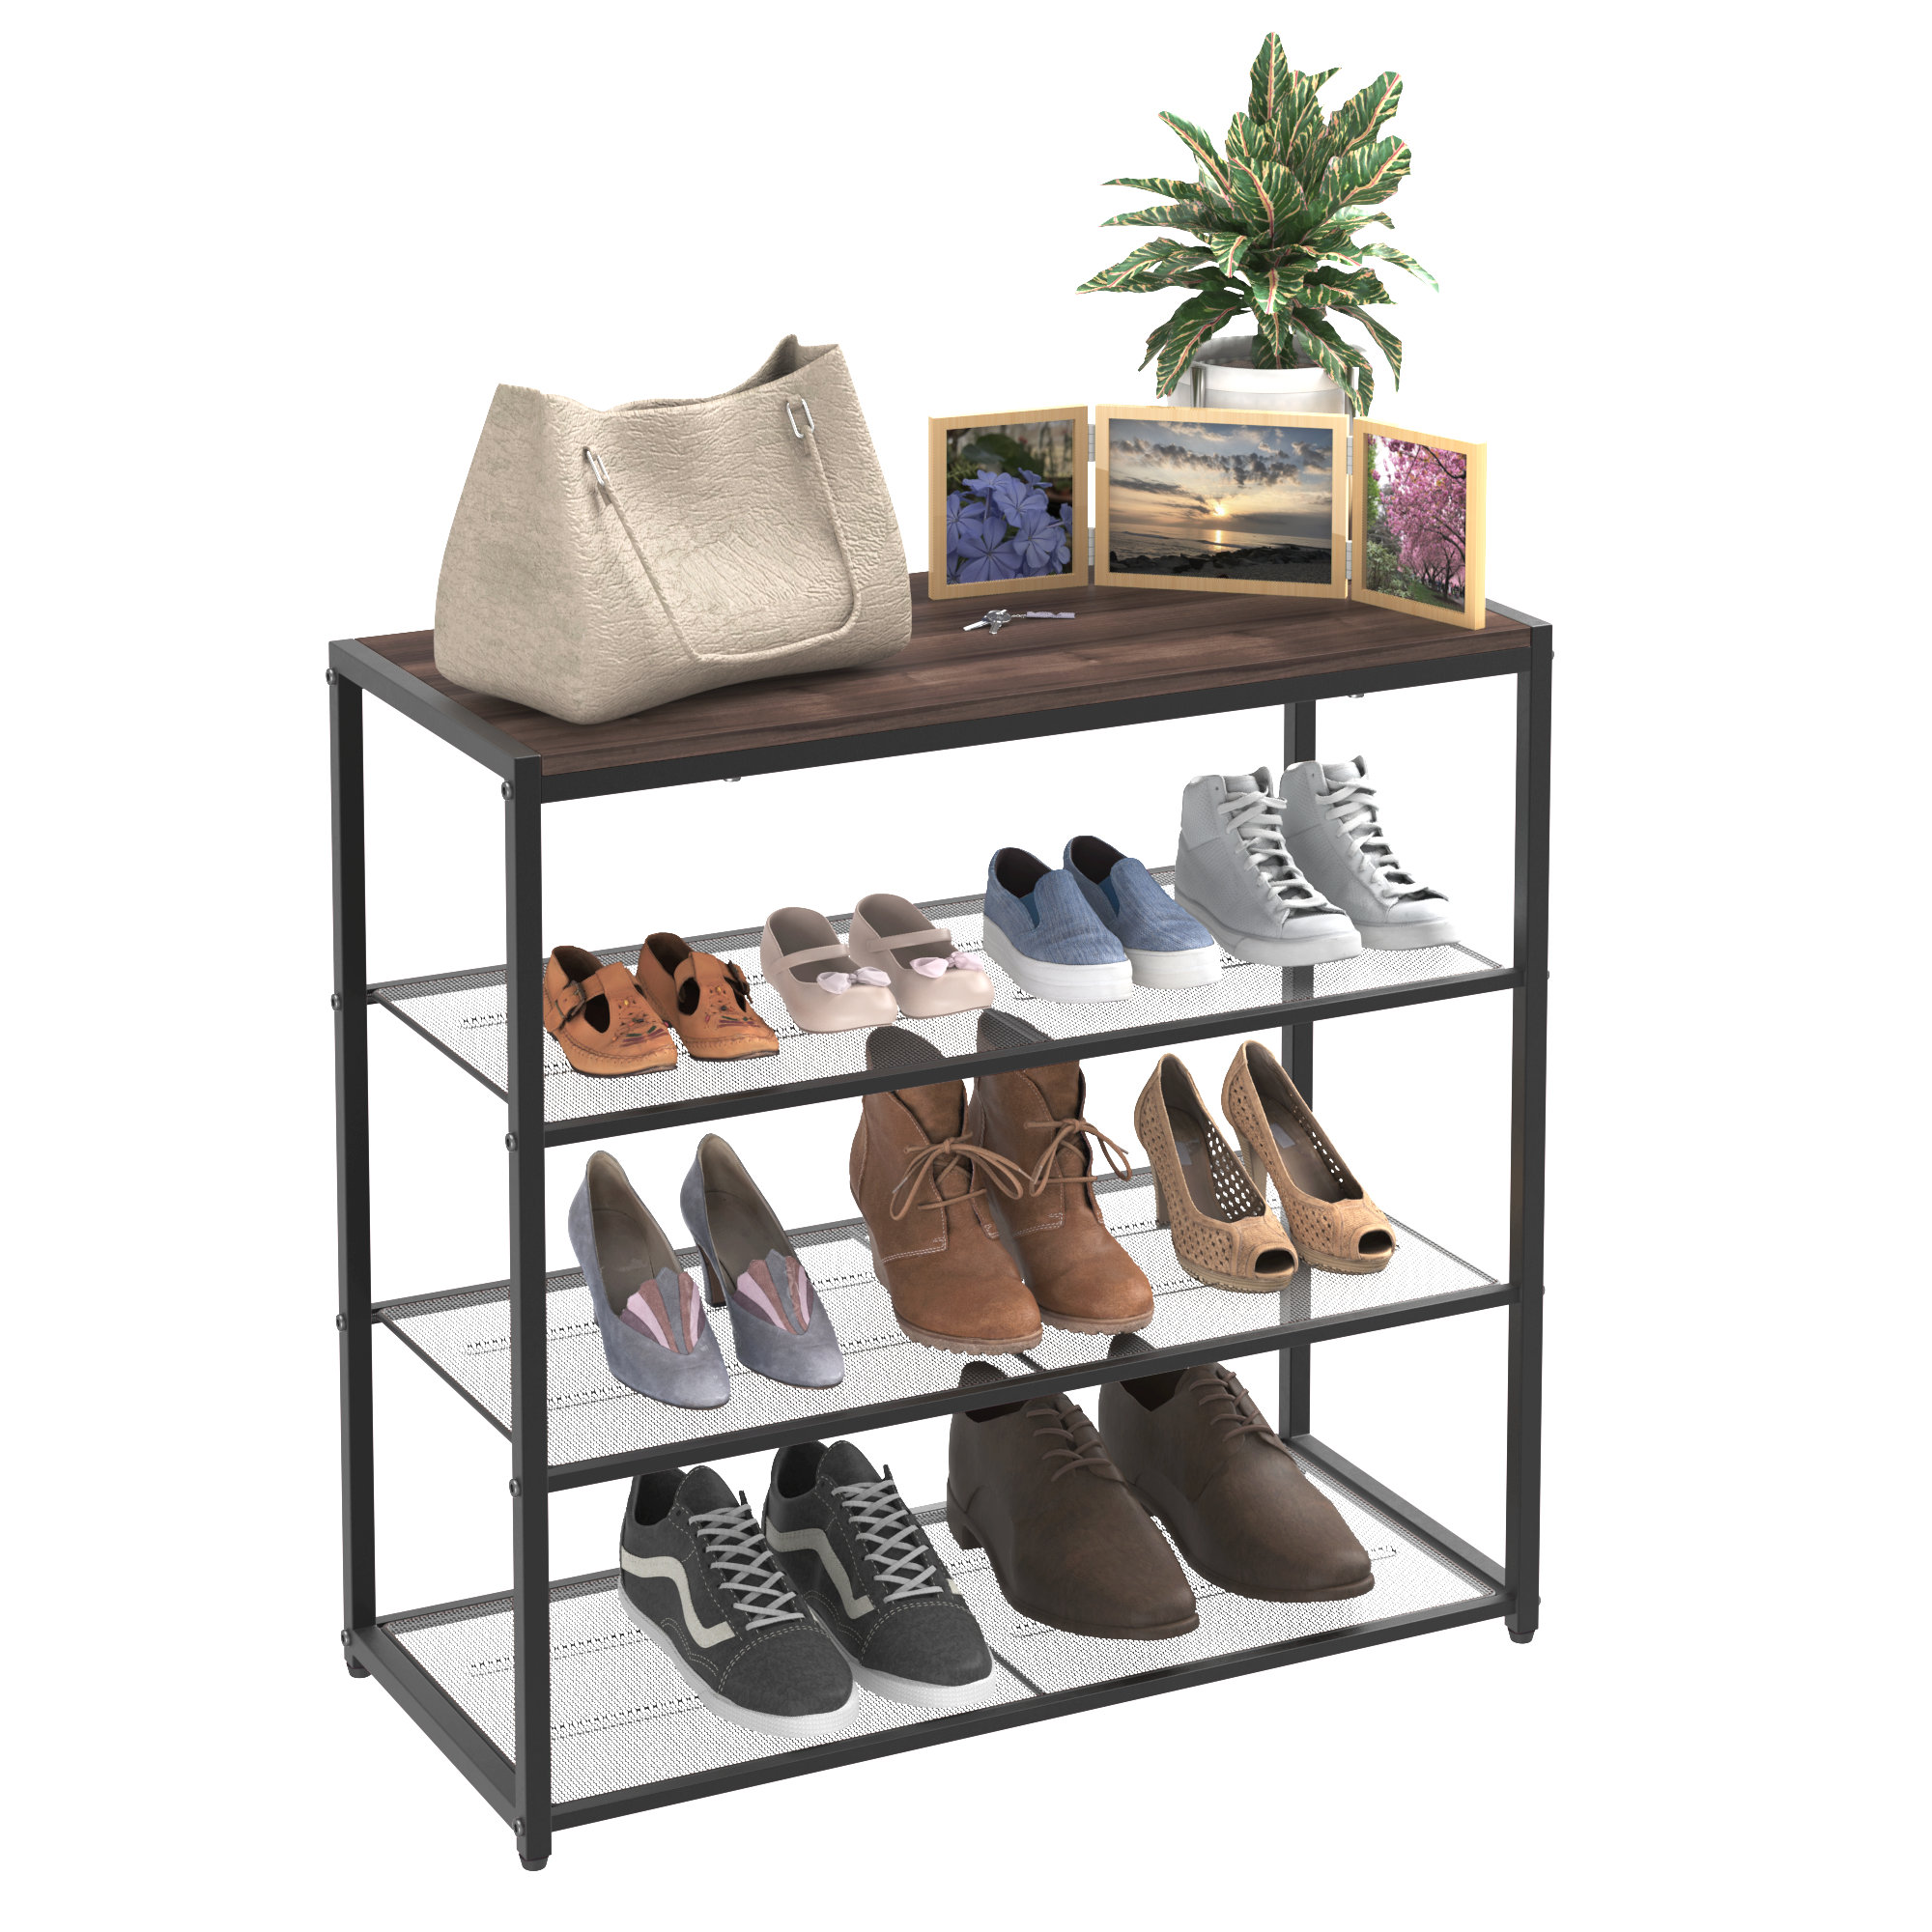 https://assets.wfcdn.com/im/91313204/compr-r85/2476/247619412/4-tier-12-pair-shoe-rack-shelf.jpg